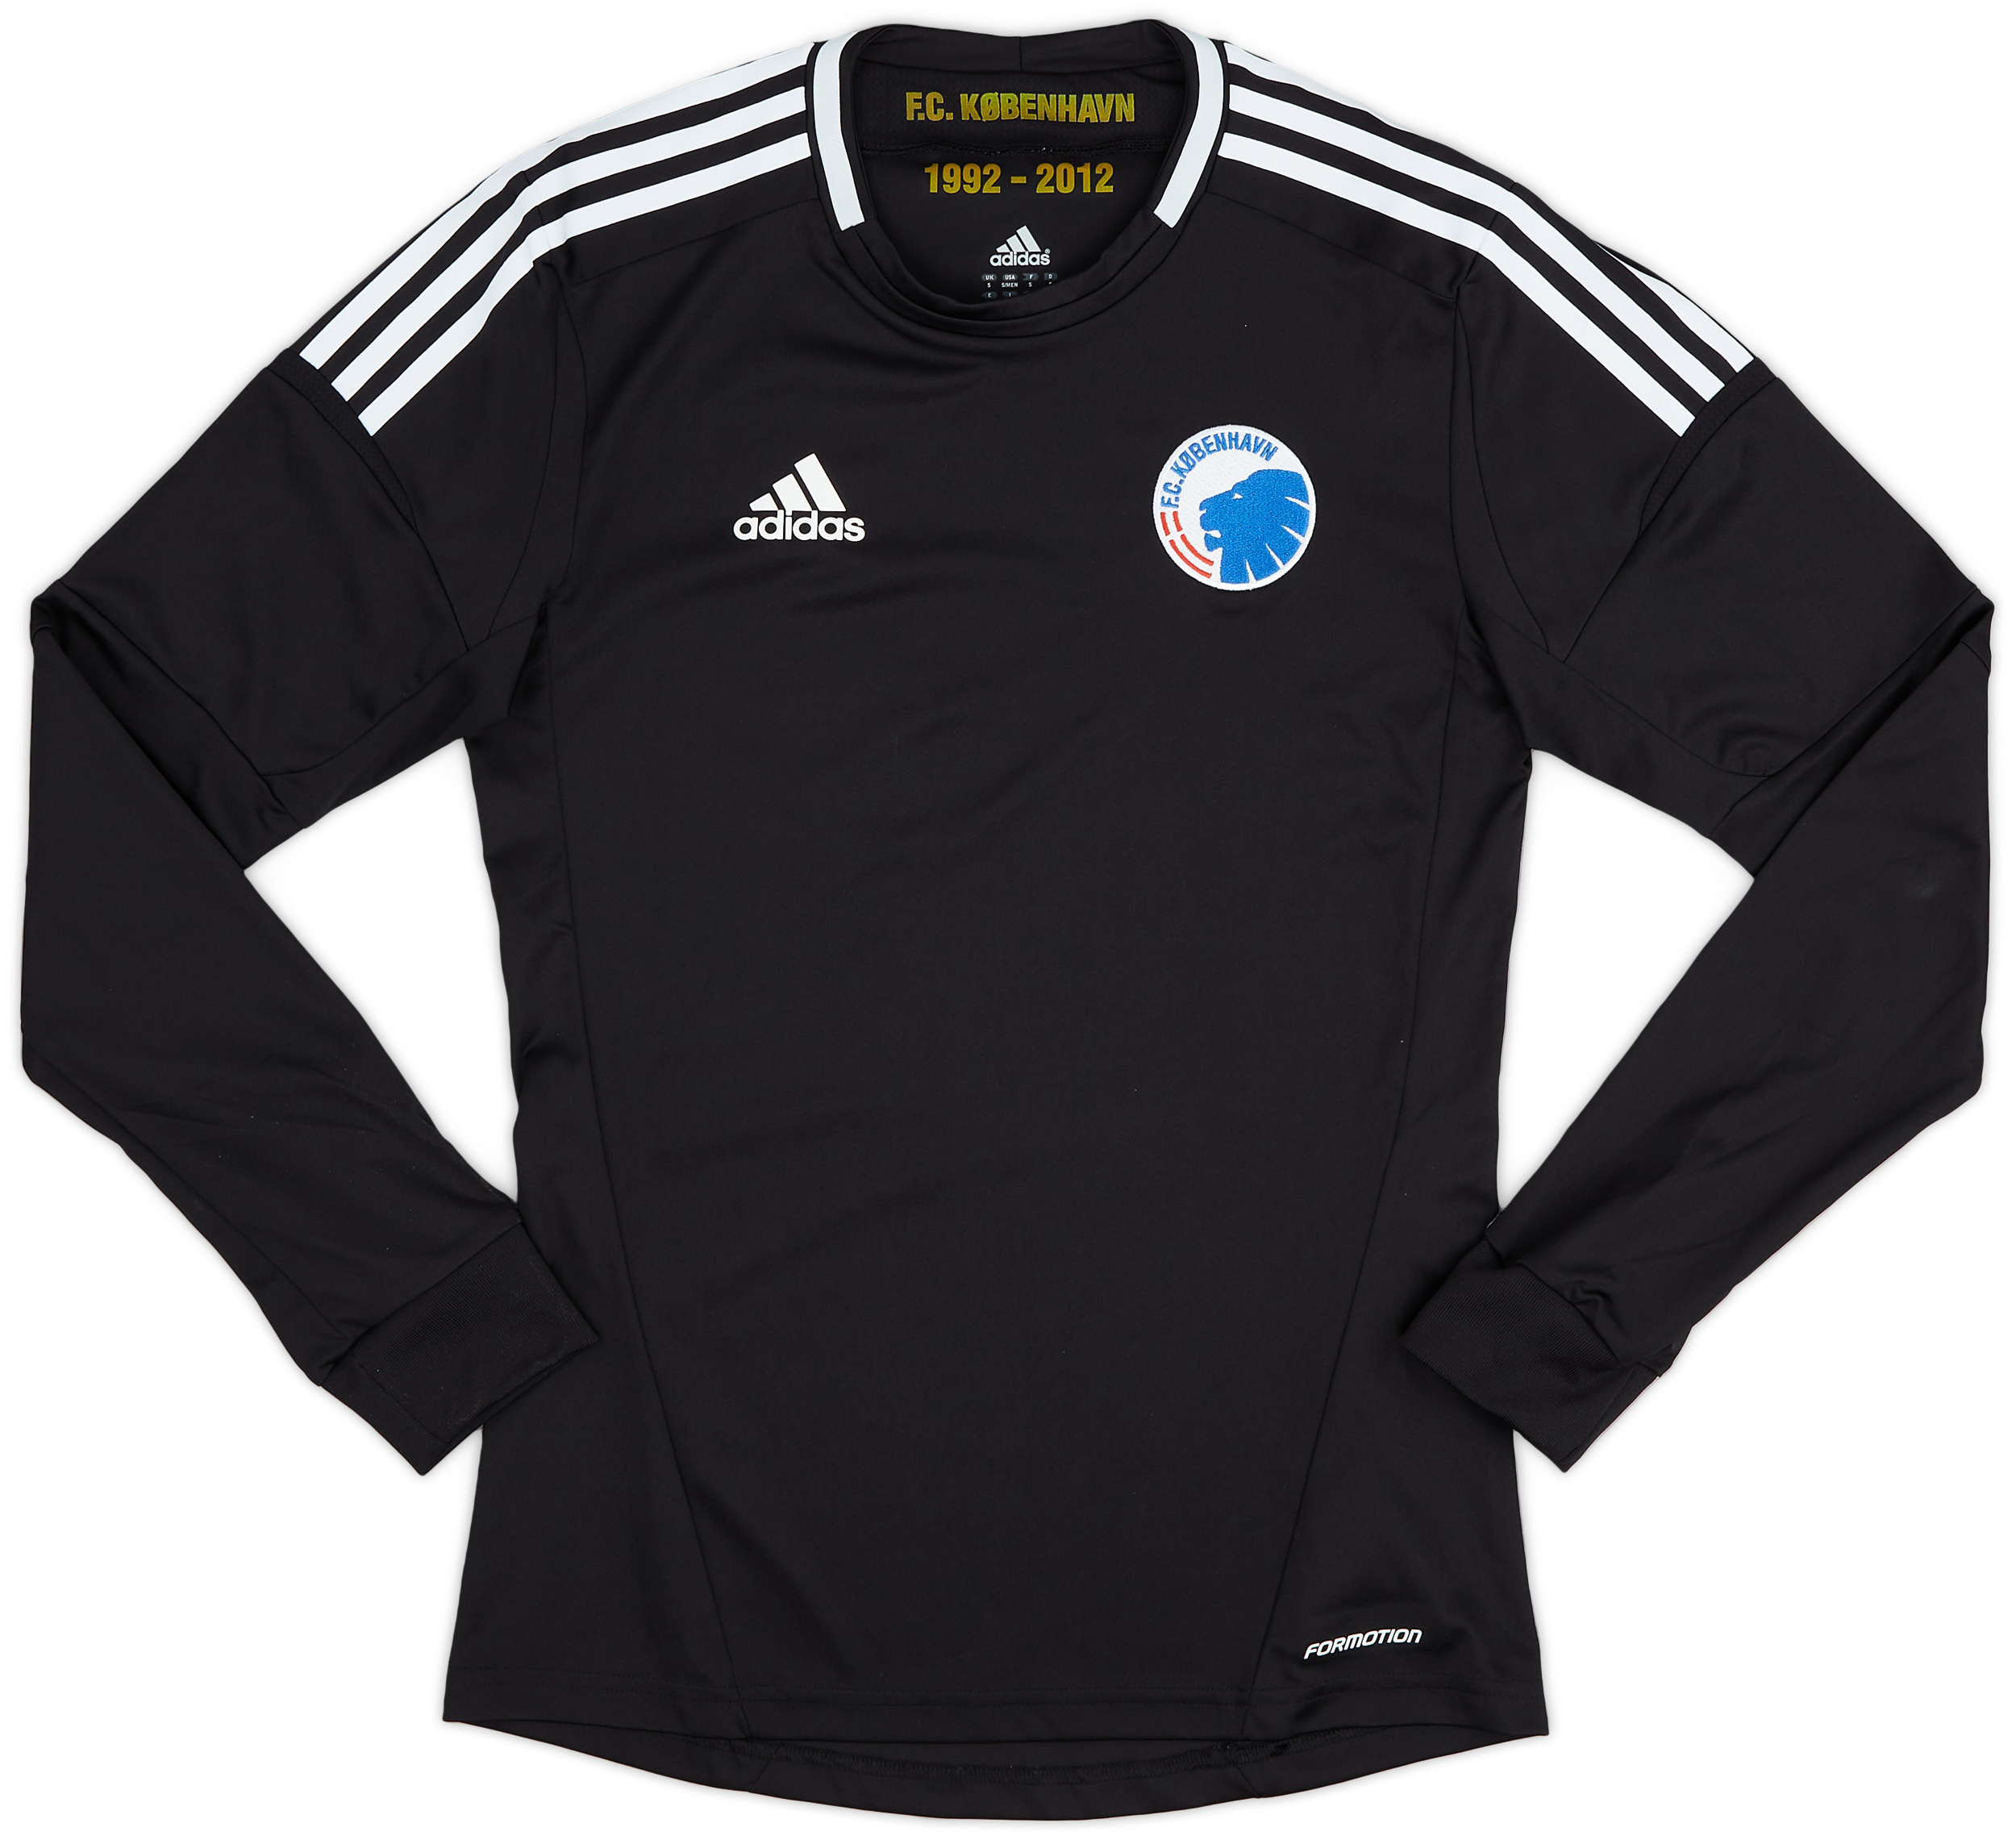 2012-13 Copenhagen Player Issue Away Shirt - 8/10 - ()